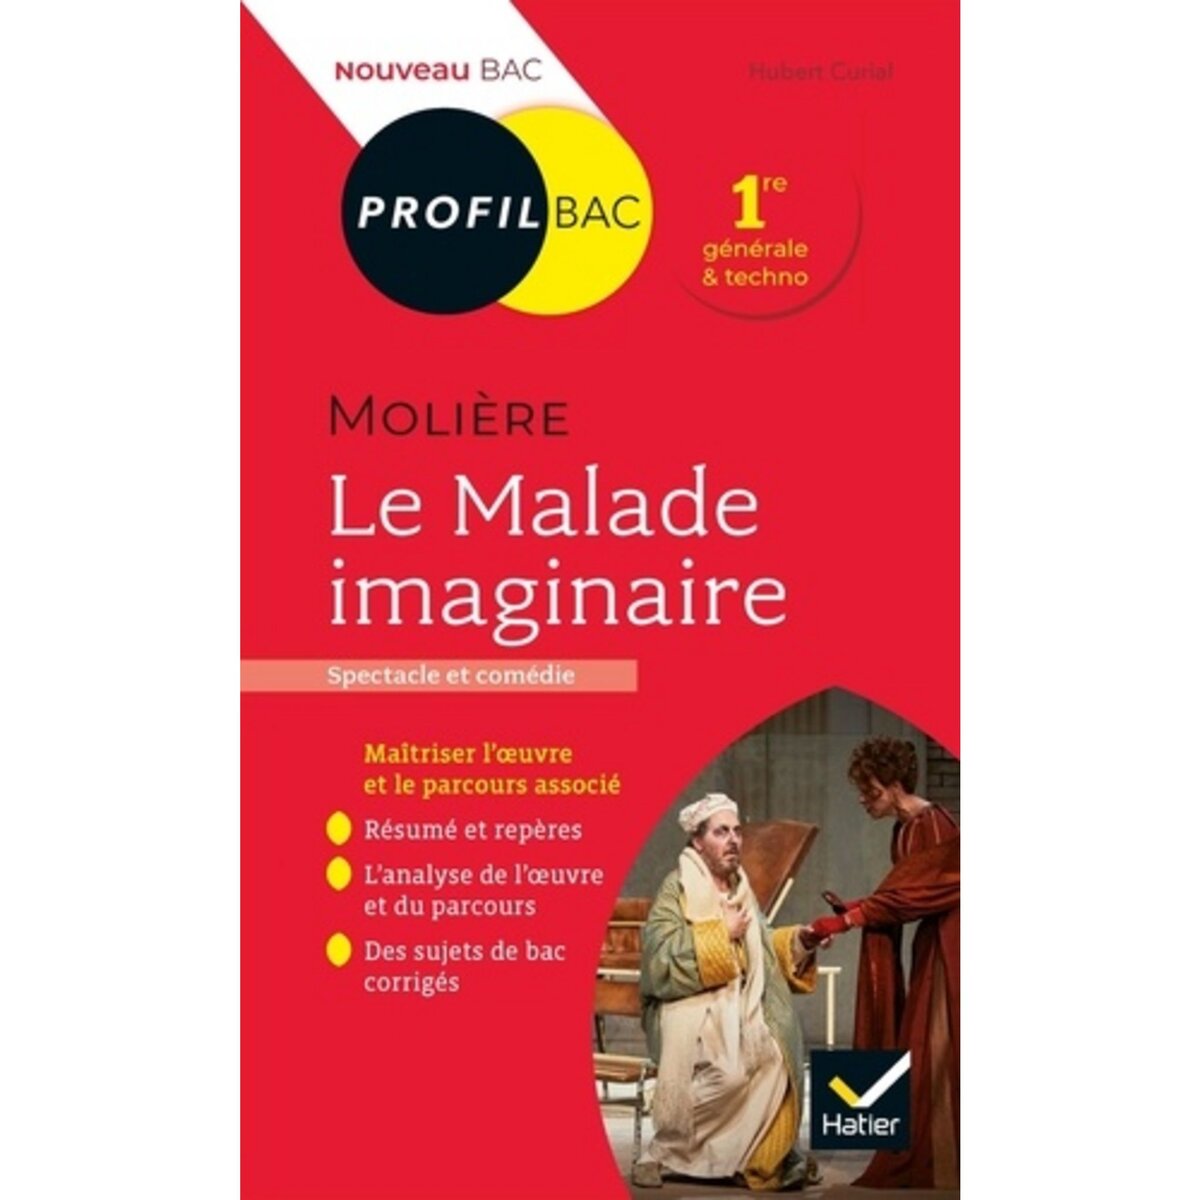  LE MALADE IMAGINAIRE, MOLIERE. BAC 1RE GENERALE ET TECHNOLOGIQUE, EDITION 2020-2021, Curial Hubert